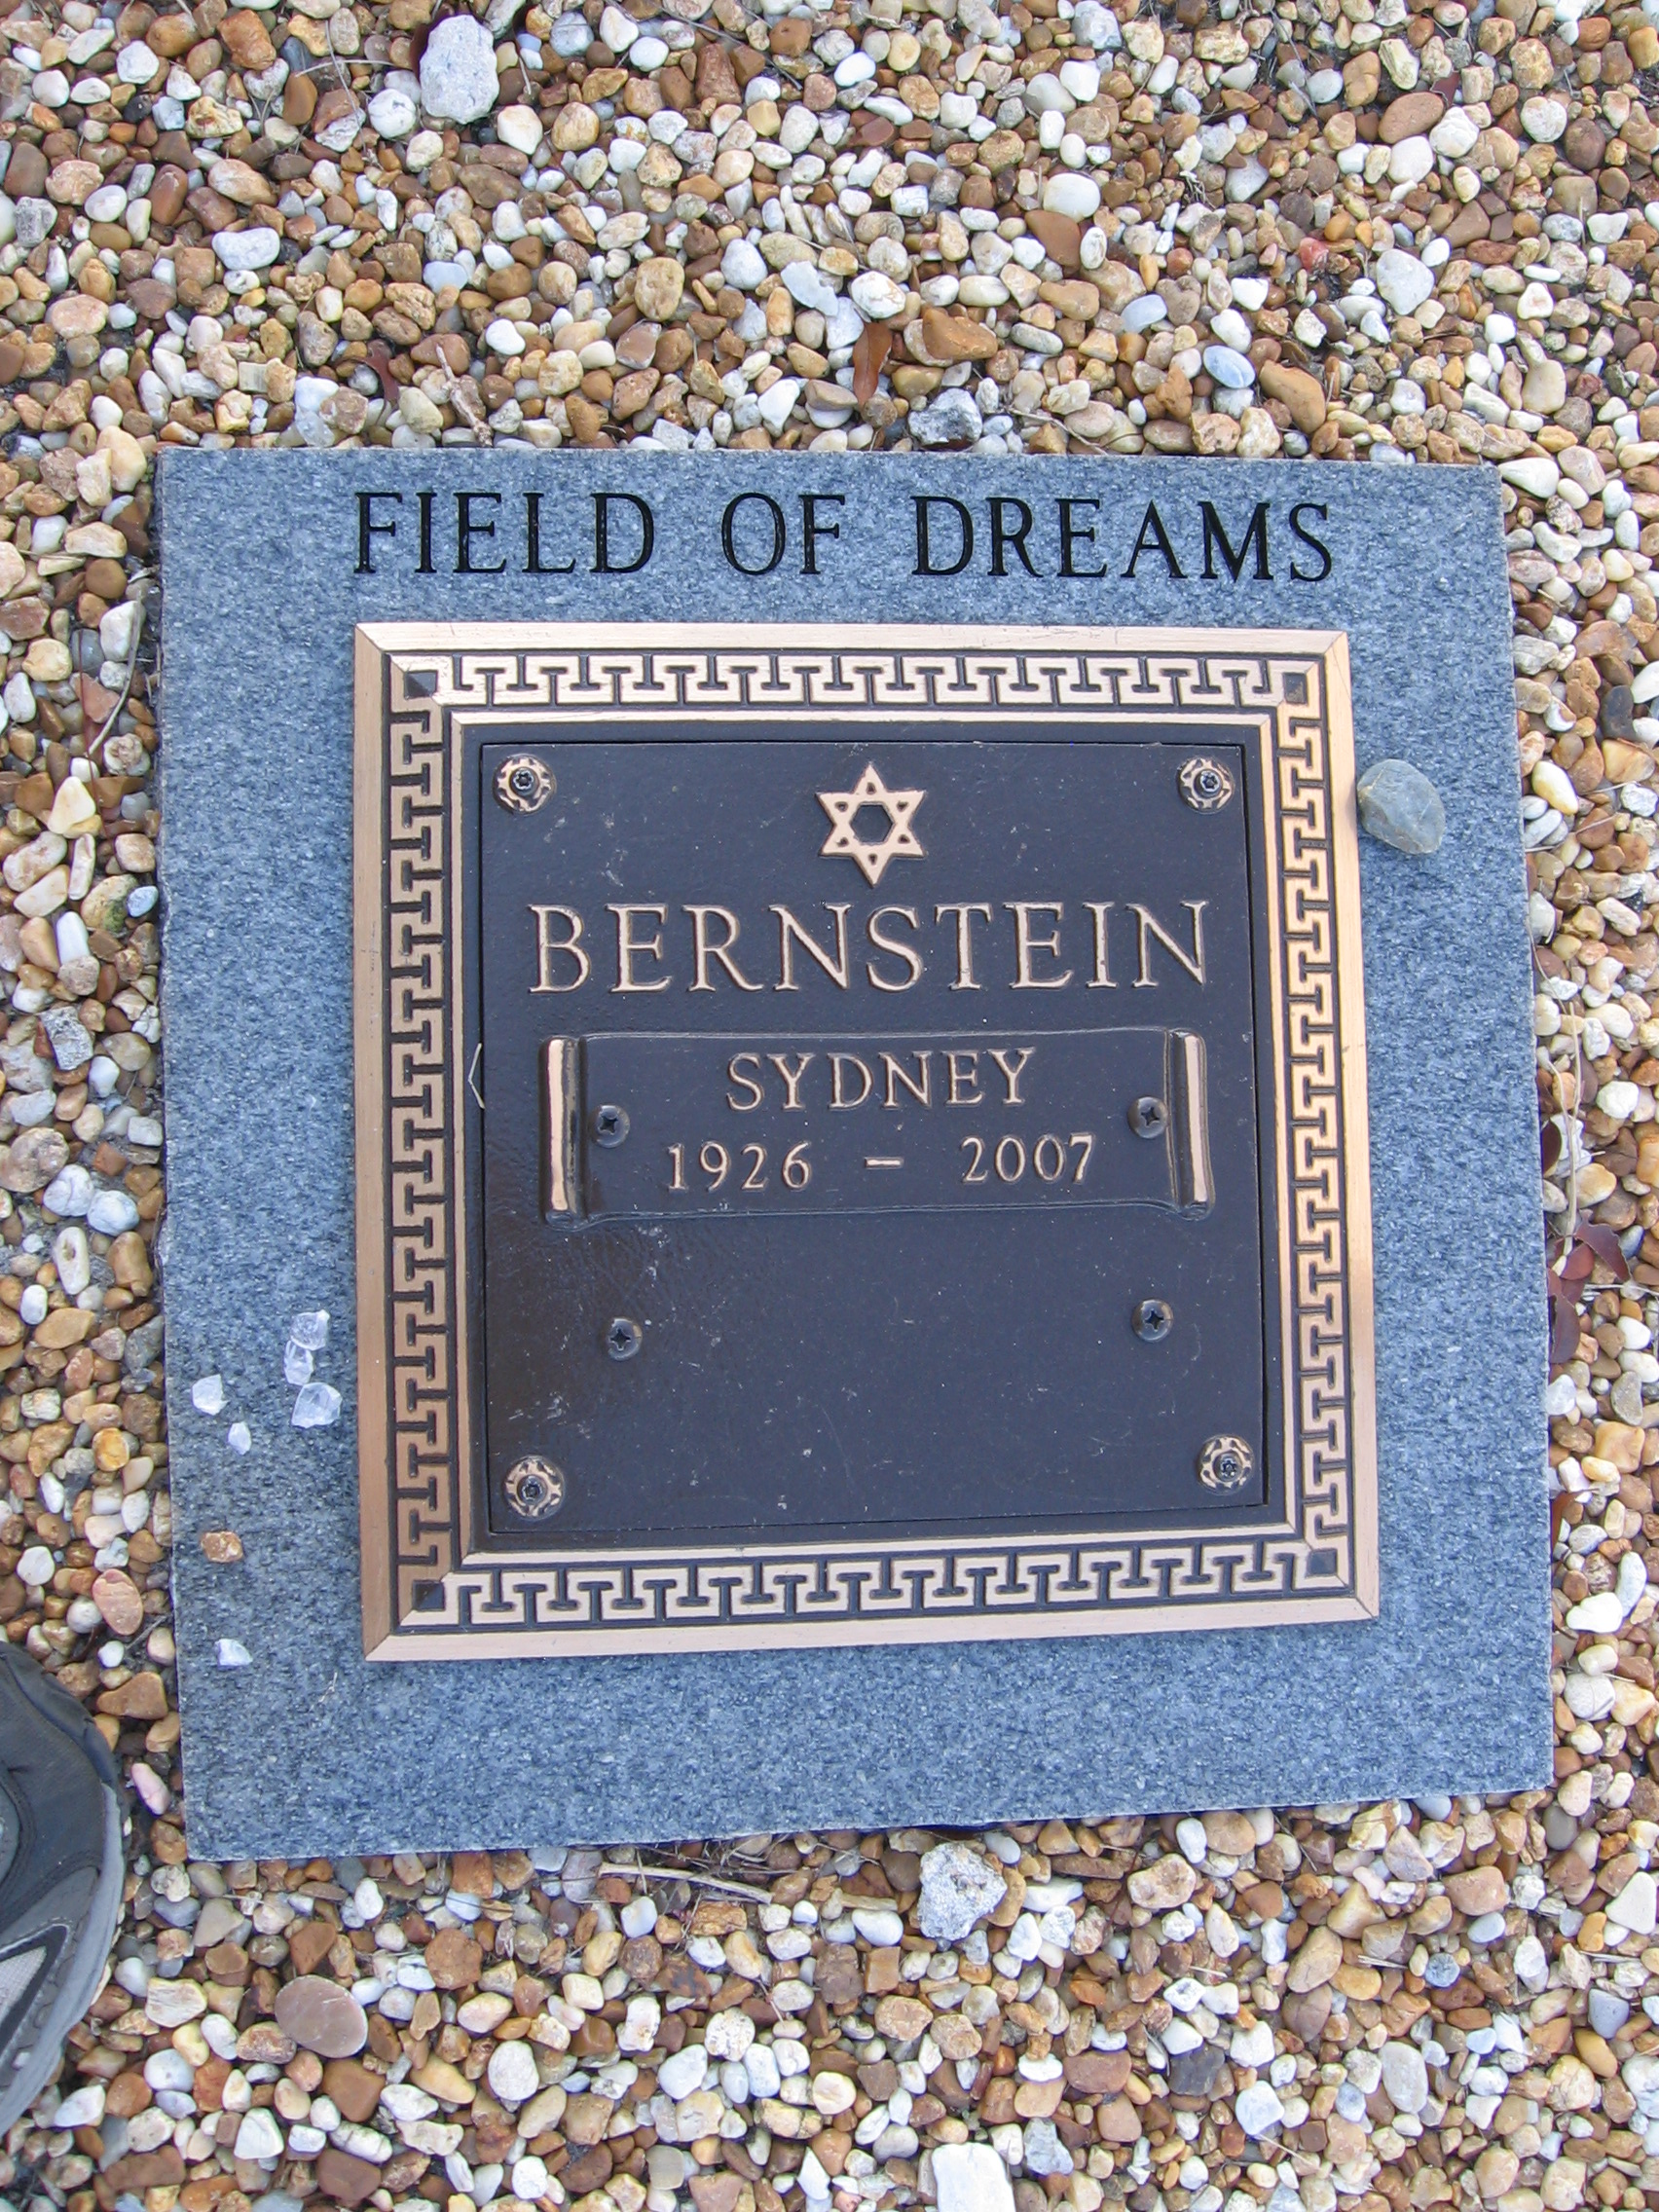 Sydney Bernstein